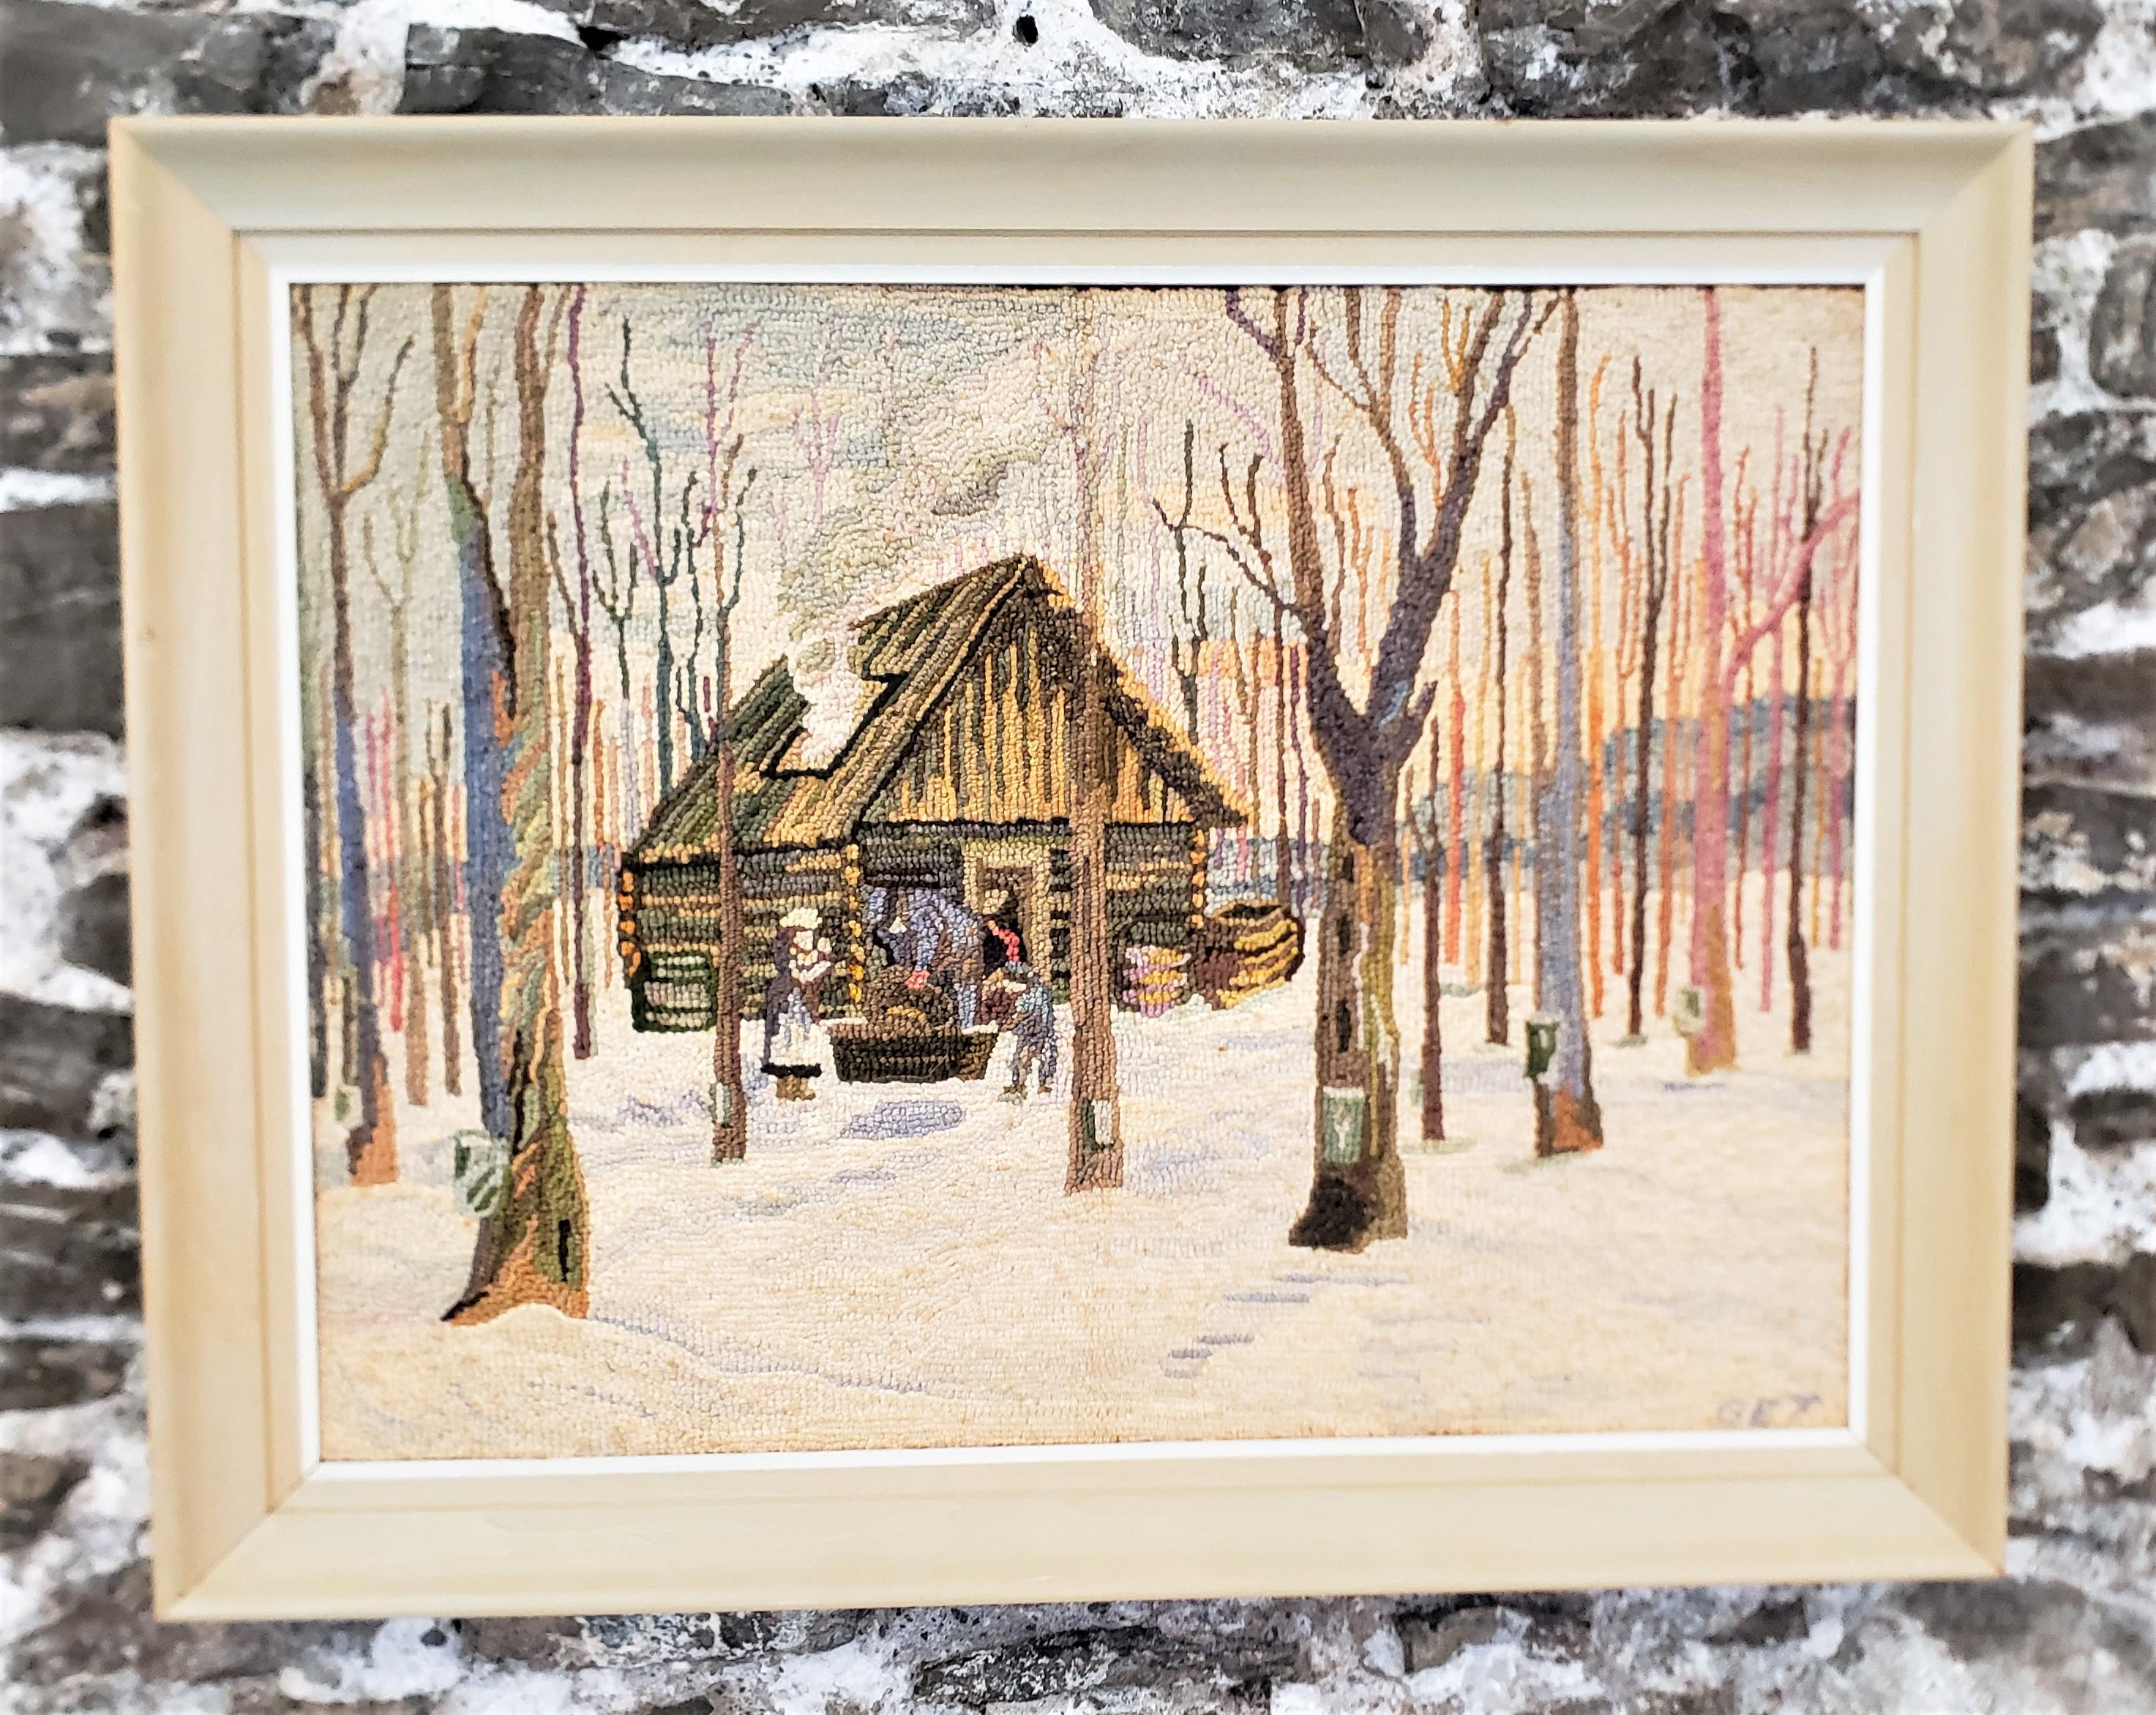 Diese gerahmte Hakenteppich oder Matte wurde von dem bekannten Künstler George Edouard Tremblay von Quebec Kanada in etwa 1940 in seiner Zeit Folk Art Stil getan. Der Teppich oder die Matte ist aus Wolle auf Sackleinen gefertigt, das auf eine